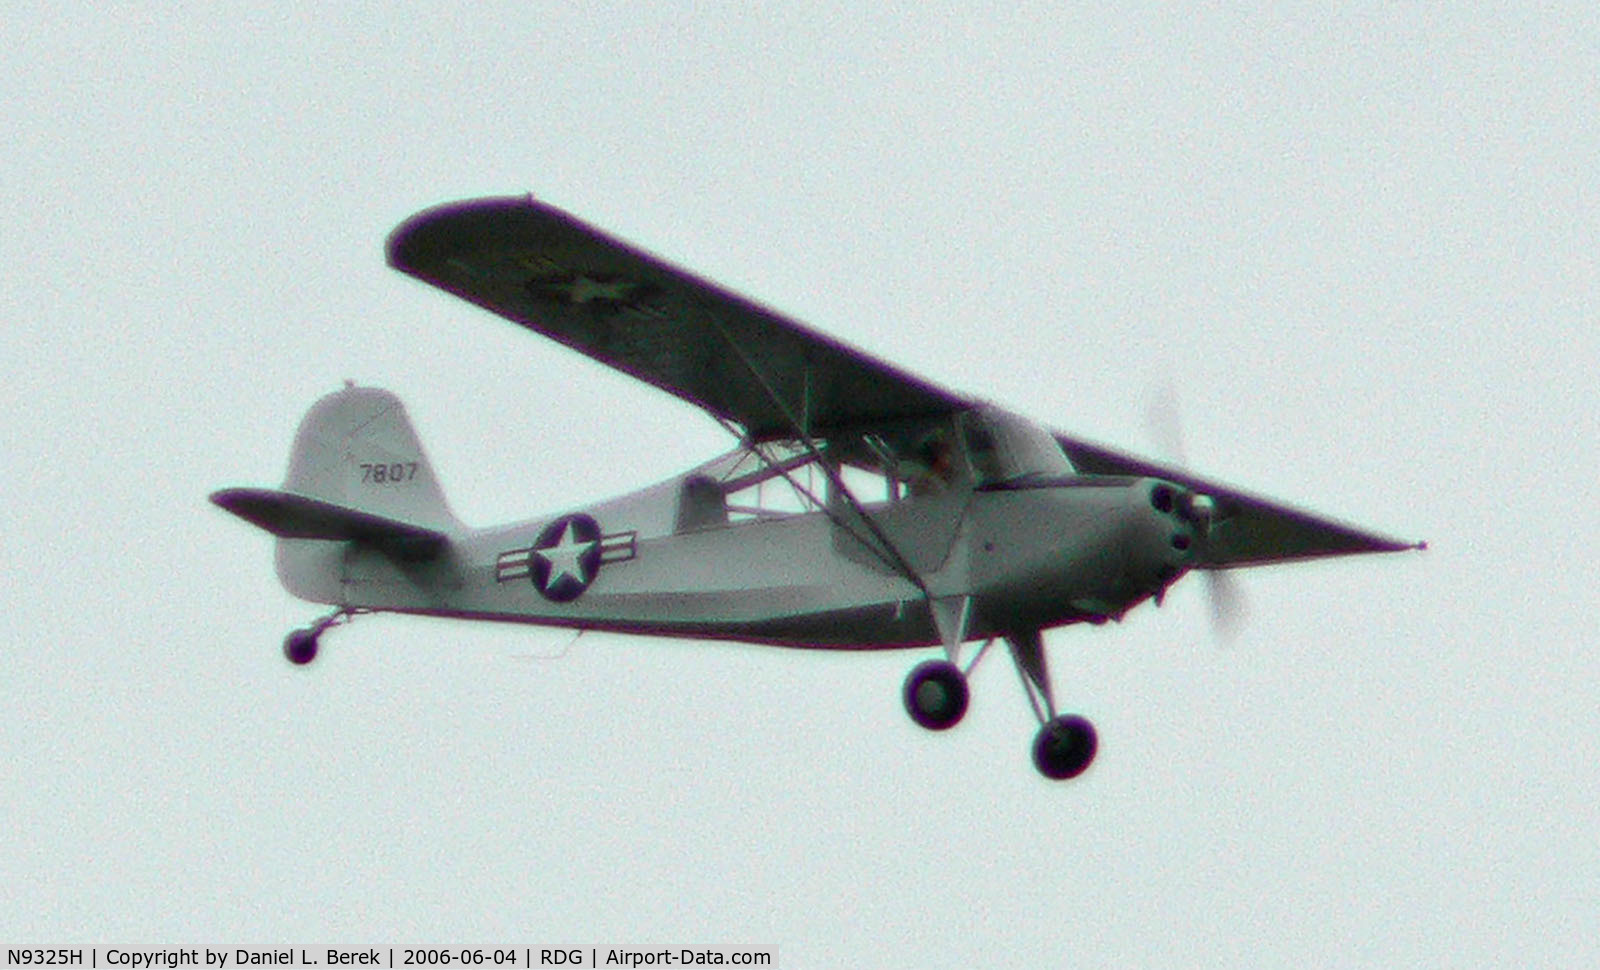 N9325H, Aeronca 7BCM C/N 47-807, Silver bird against a silver sky.